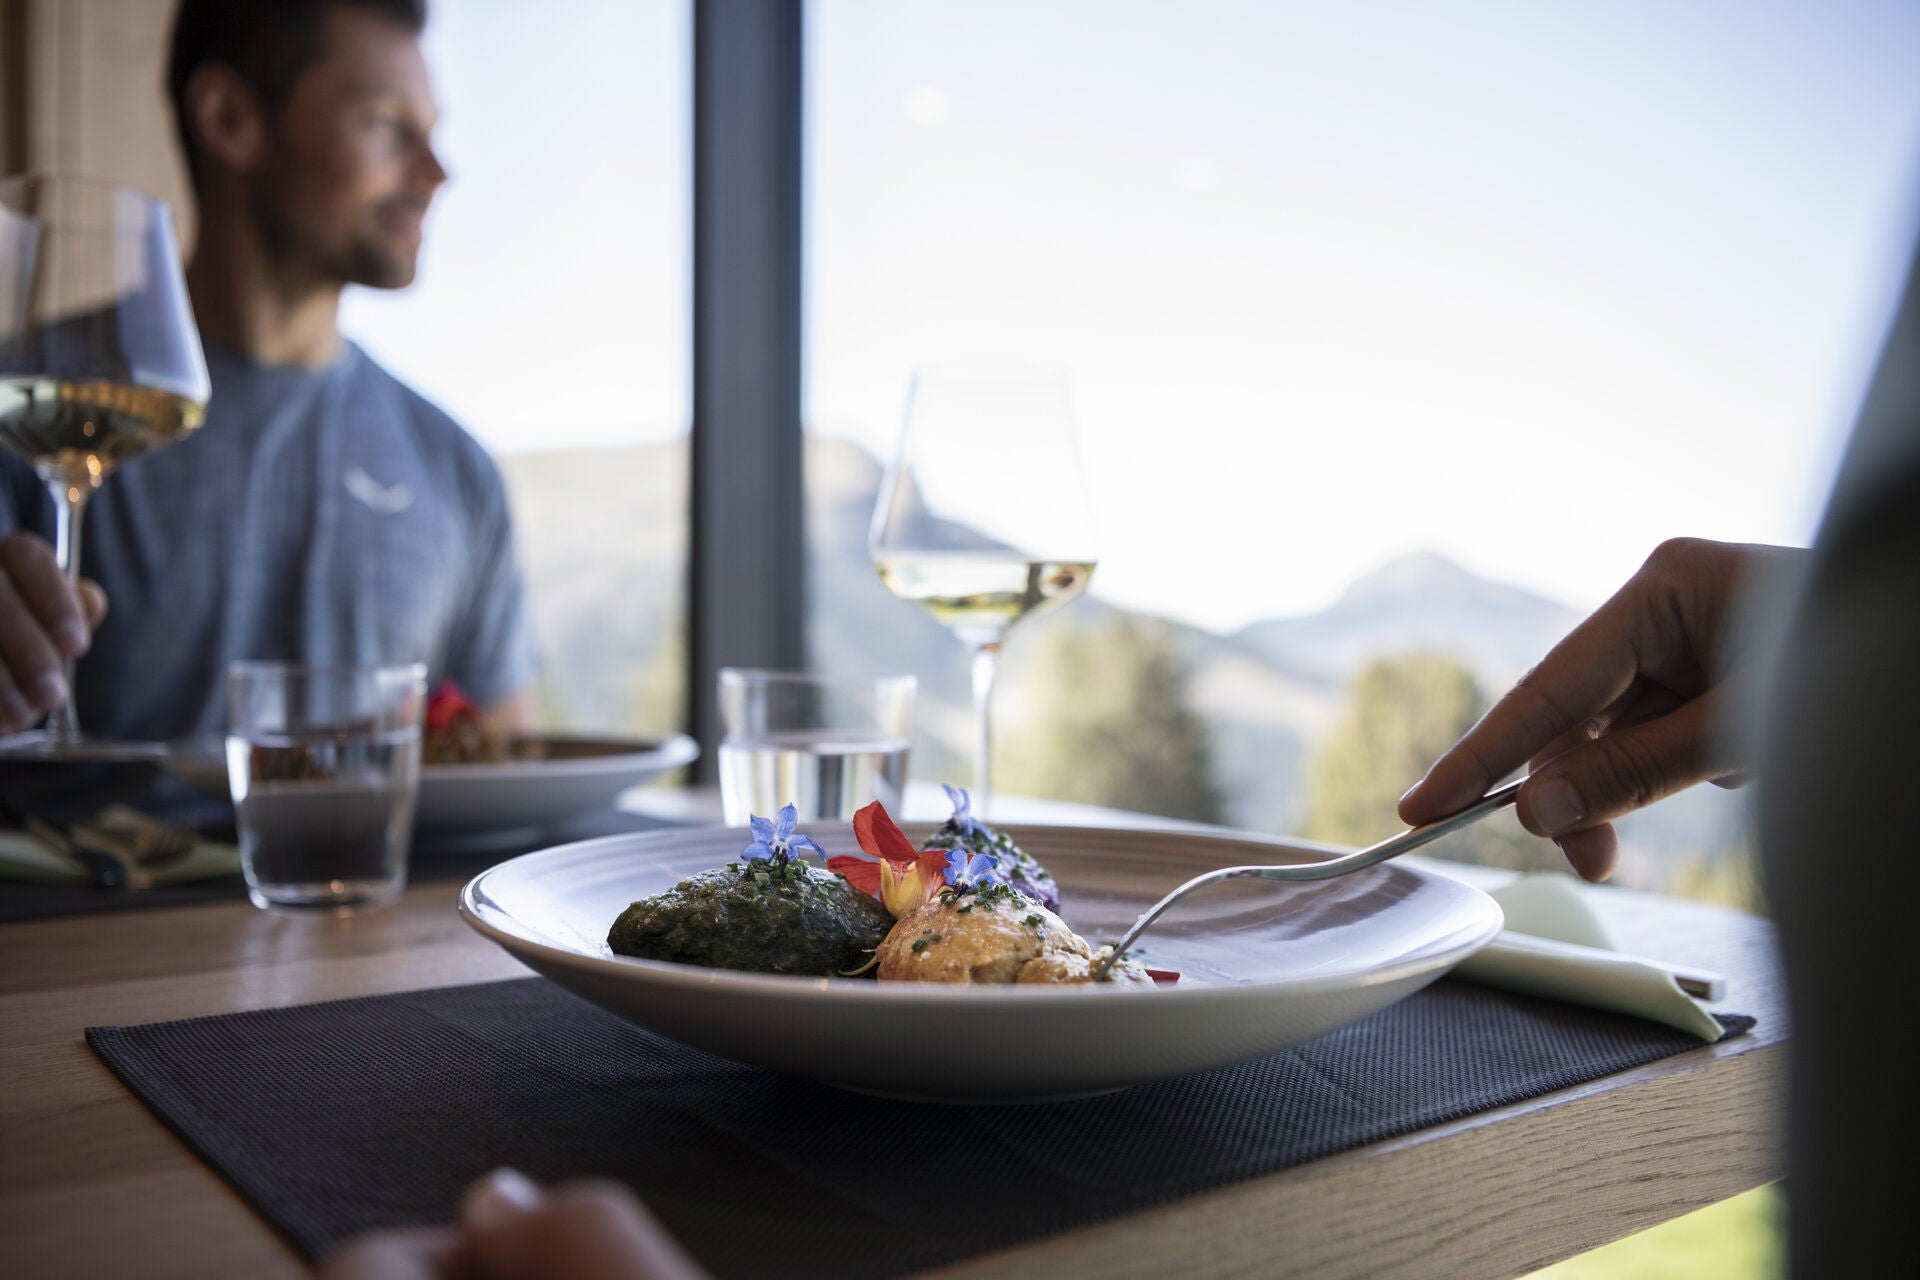 Ein Teller mit Knödel und ein Glas Wein stehen auf dem Tisch an der Fensterfront, ein Mann erhebt das Weinglas